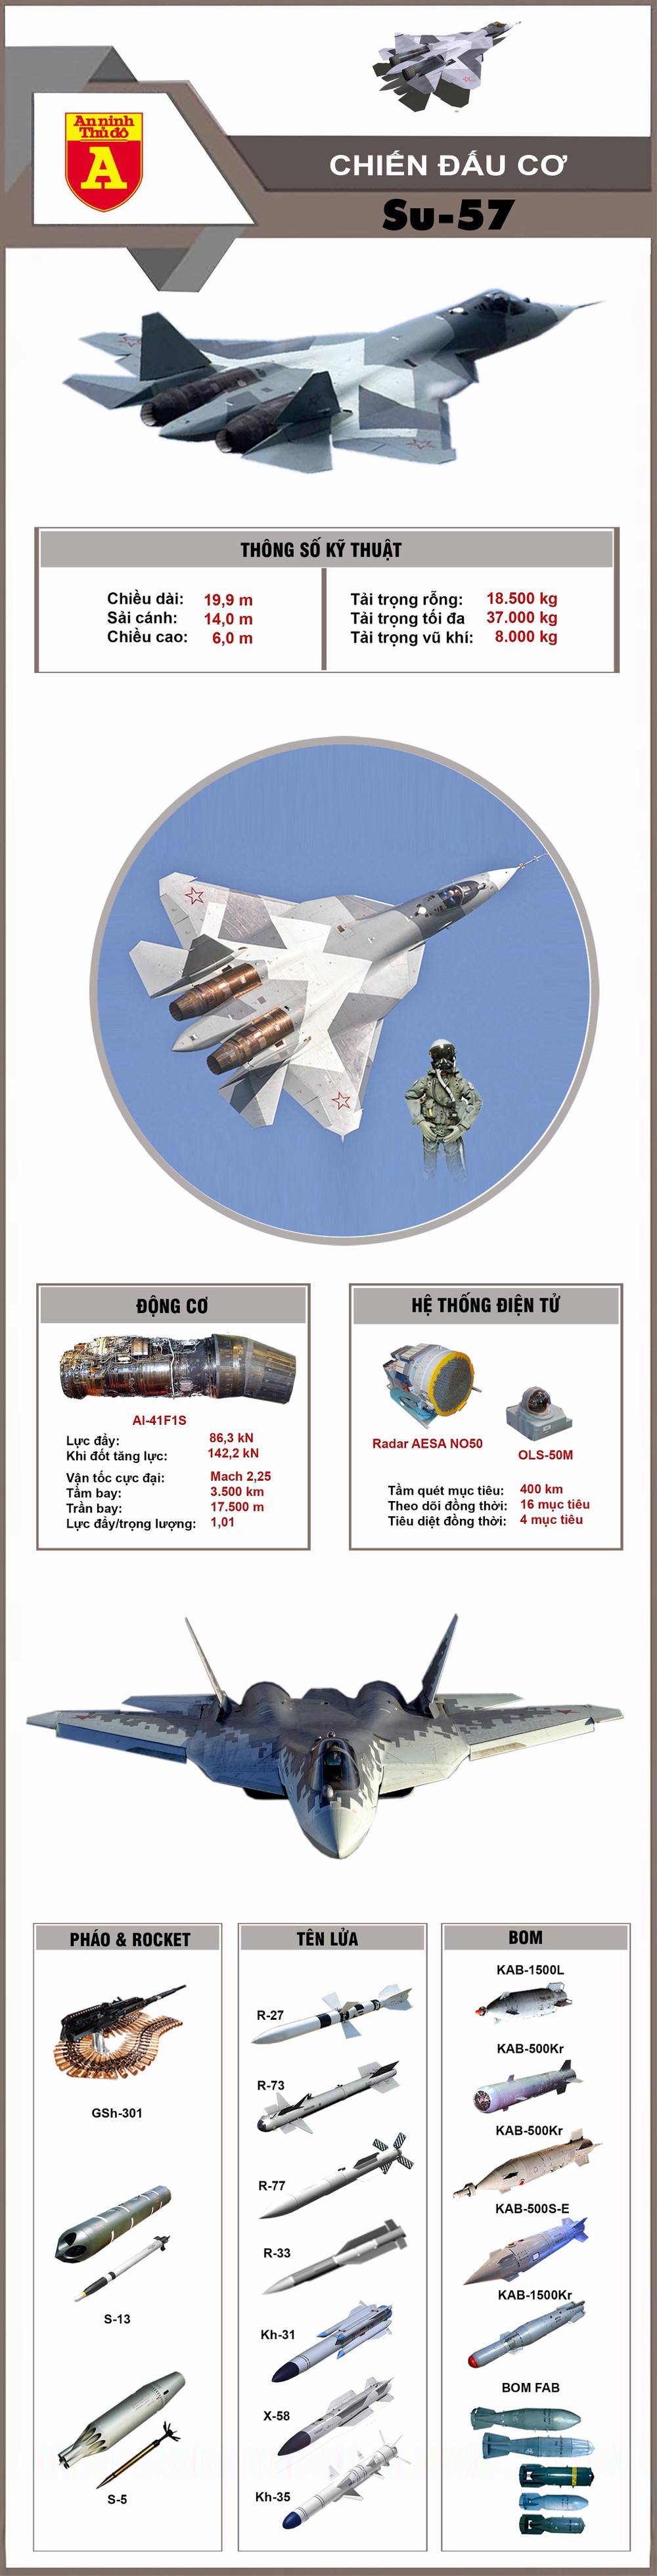 Khả năng chiến đấu của Su-57  - Ảnh 1